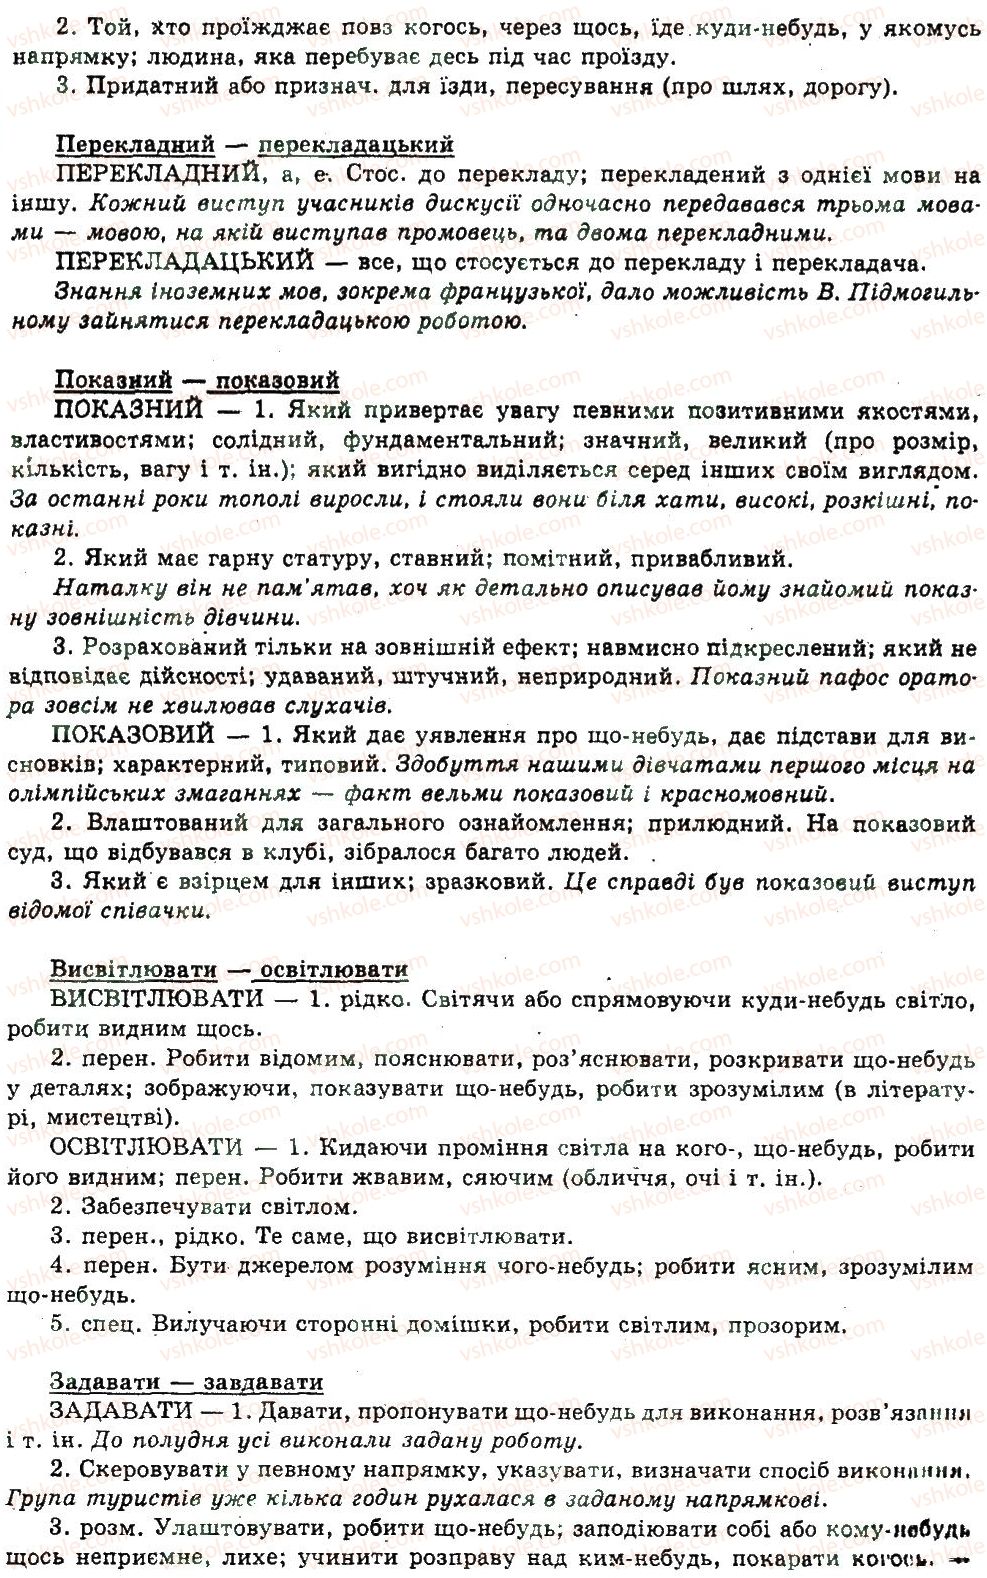 11-ukrayinska-mova-nv-bondarenko-2011--vstup-2-tochnist-movlennya-66-rnd5315.jpg